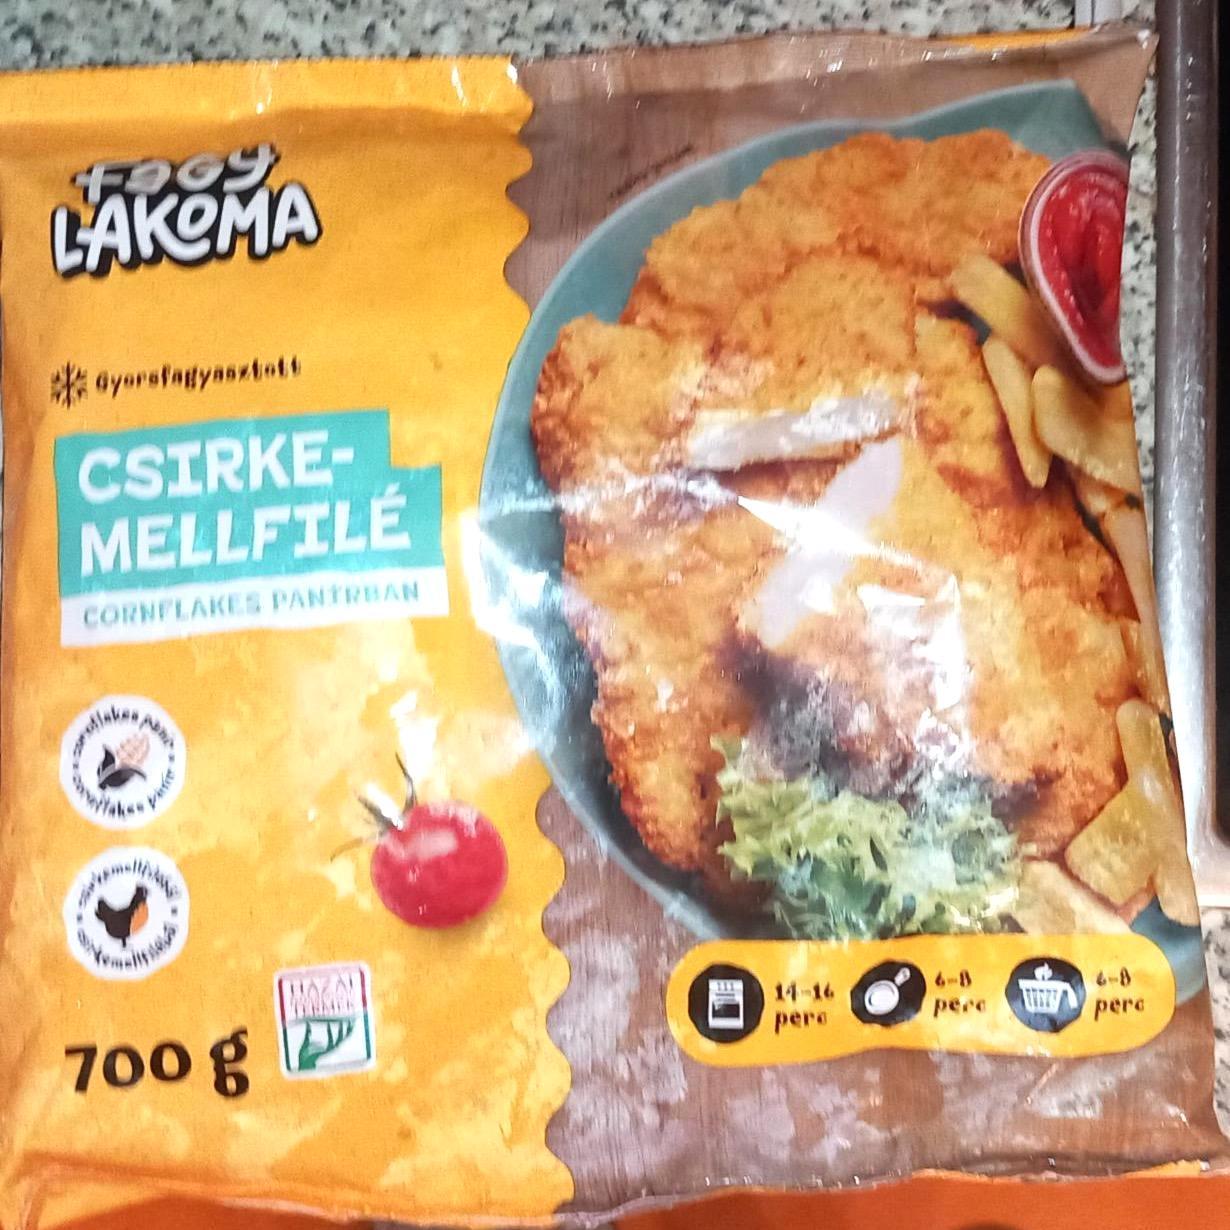 Képek - Gyorsfagyasztott csirkemellfilé cornflakes panírban Fagylakoma